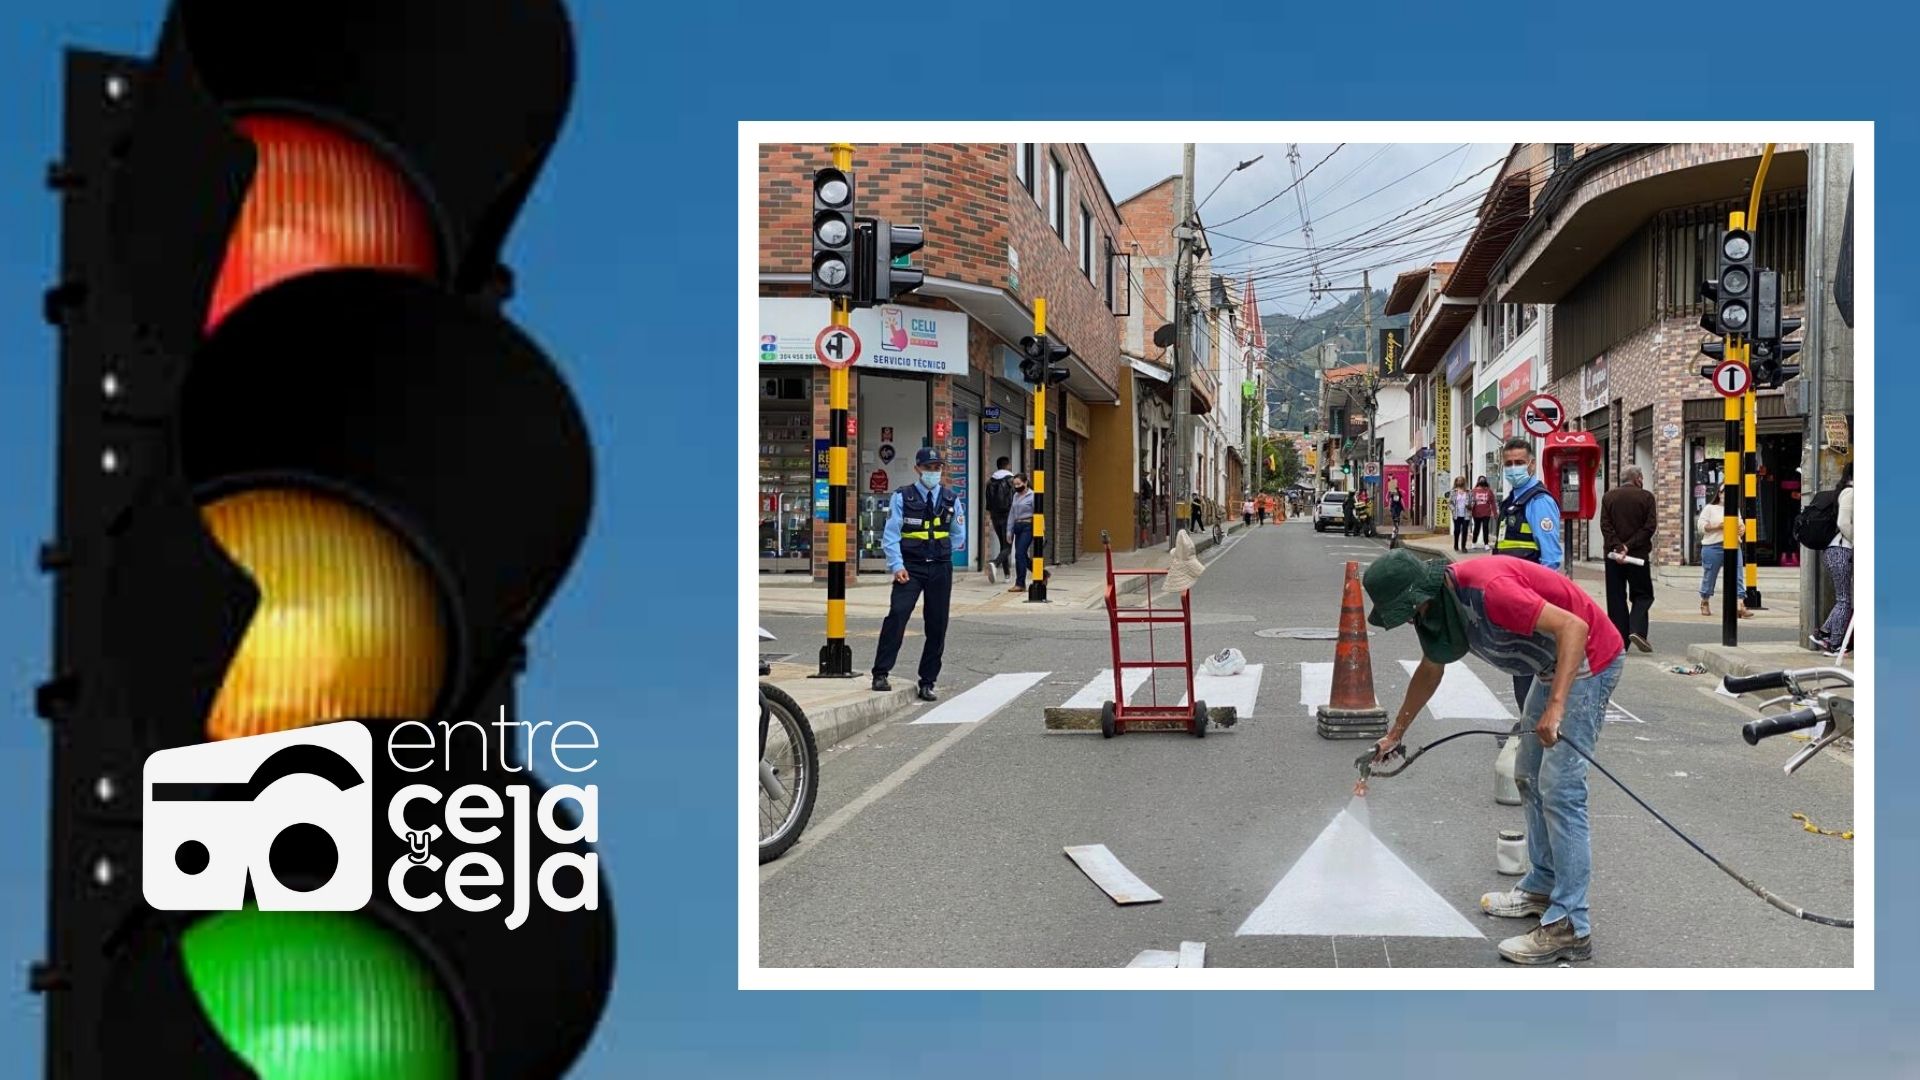 Continúa instalación de puntos semafóricos en La Ceja.